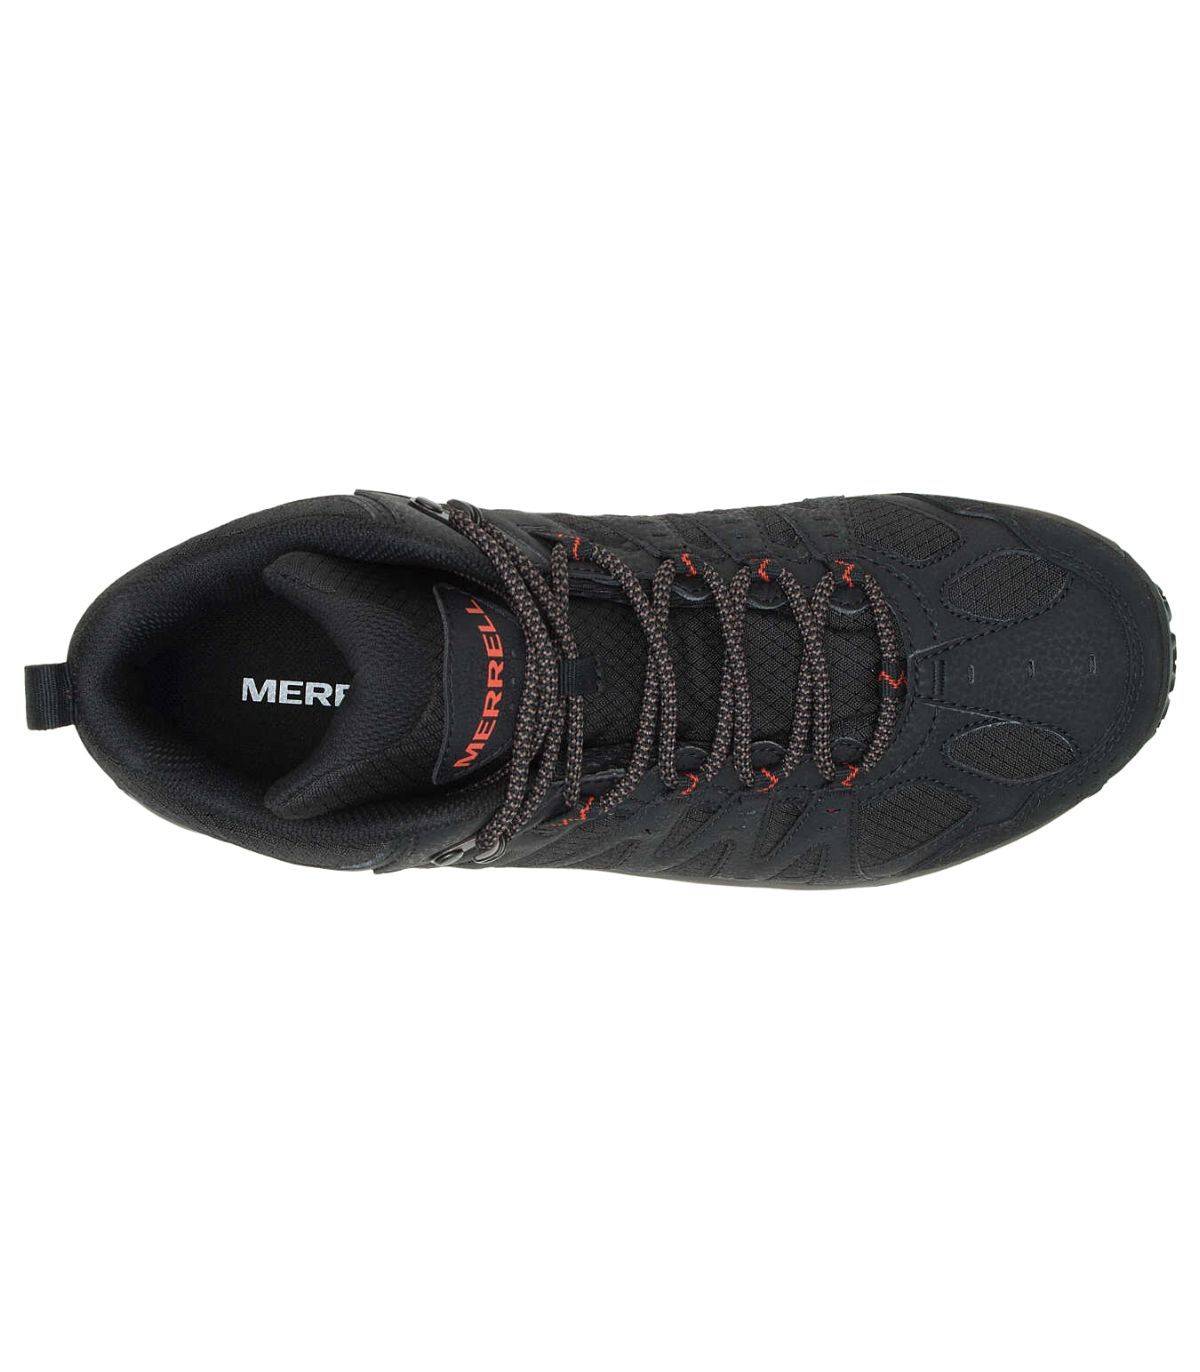 Zapatillas Merrell Accentor 3 Sport Gtx Hombre Black. Oferta y